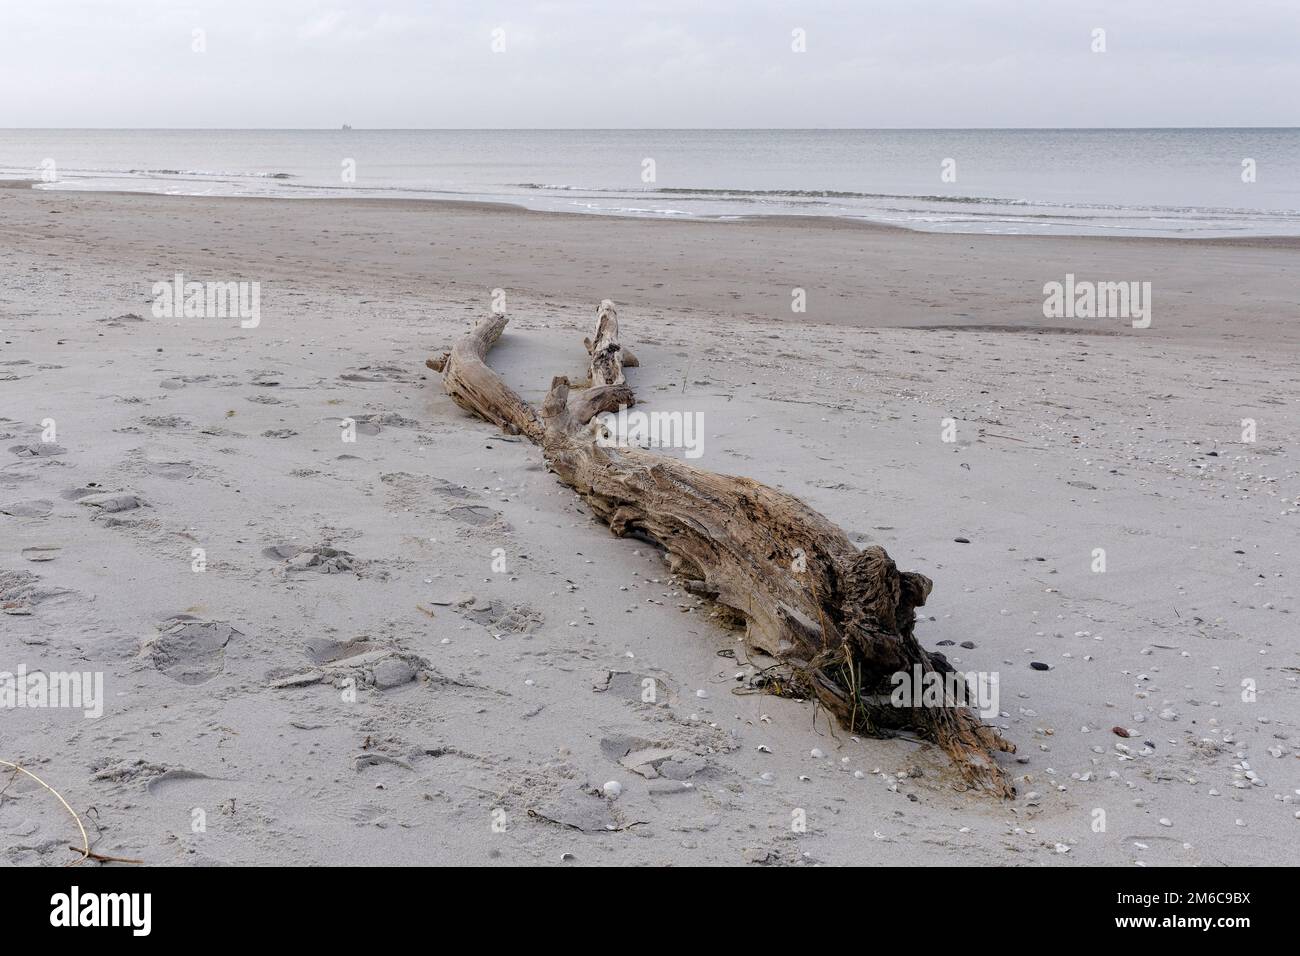 L'hiver sur la côte ouest de Weststrand. Un tronc d'arbre délavé se trouve sur la plage. Darß, Fischland-Darß-Zingst, Mecklenburg-Vorpommern, Allemagne Banque D'Images